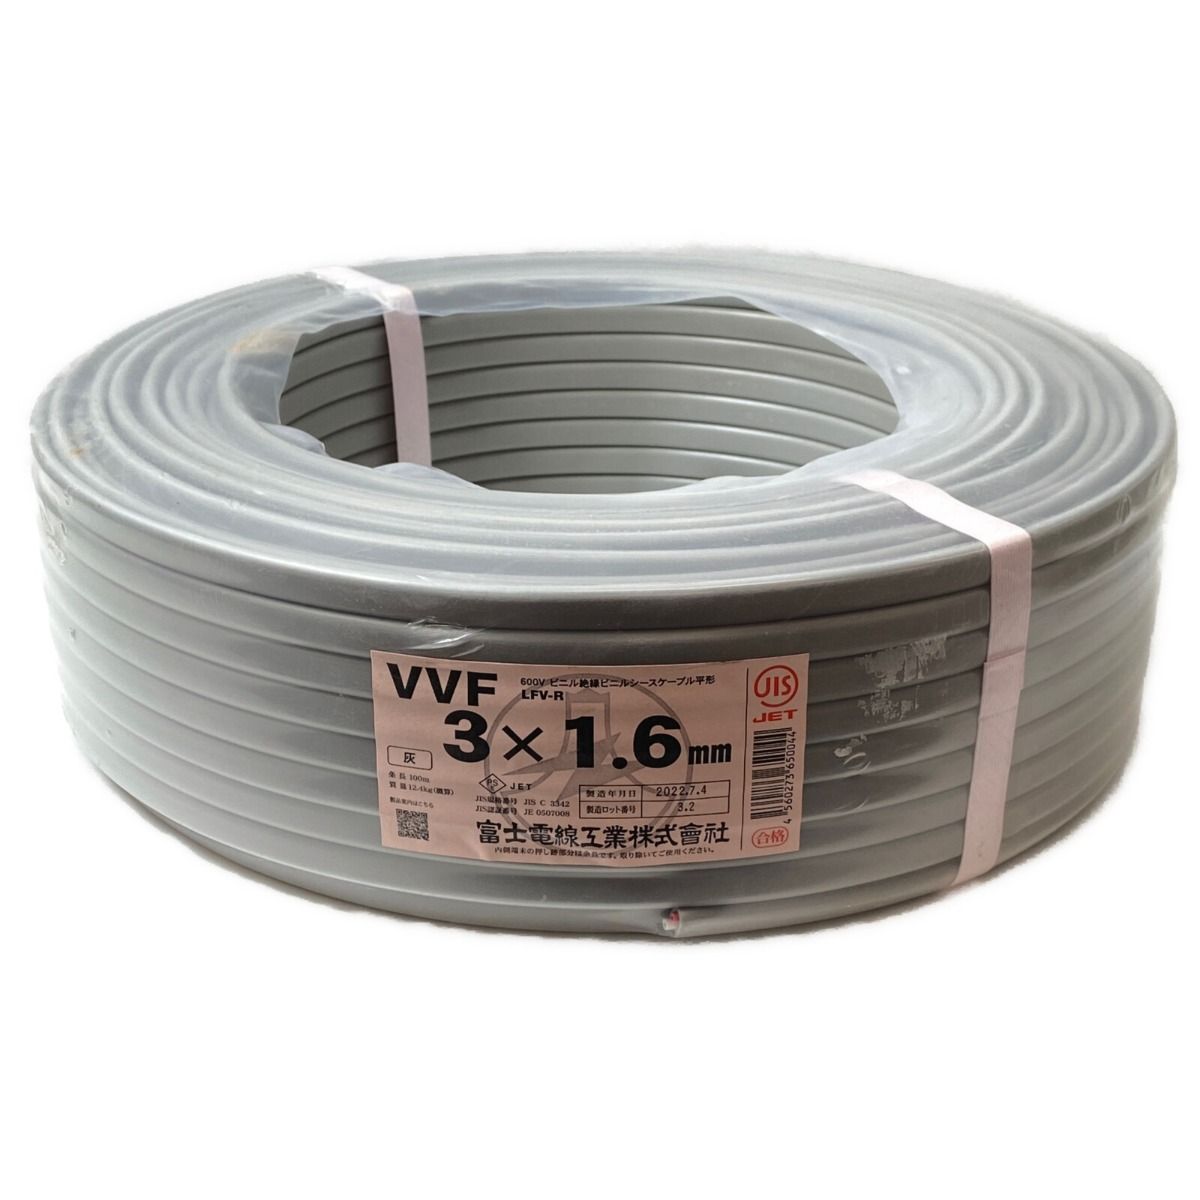 ΦΦ富士電線工業(FUJI ELECTRIC WIRE) VVFケーブル  平形 100m巻 灰色 VVF3×1.6 3芯 0507008